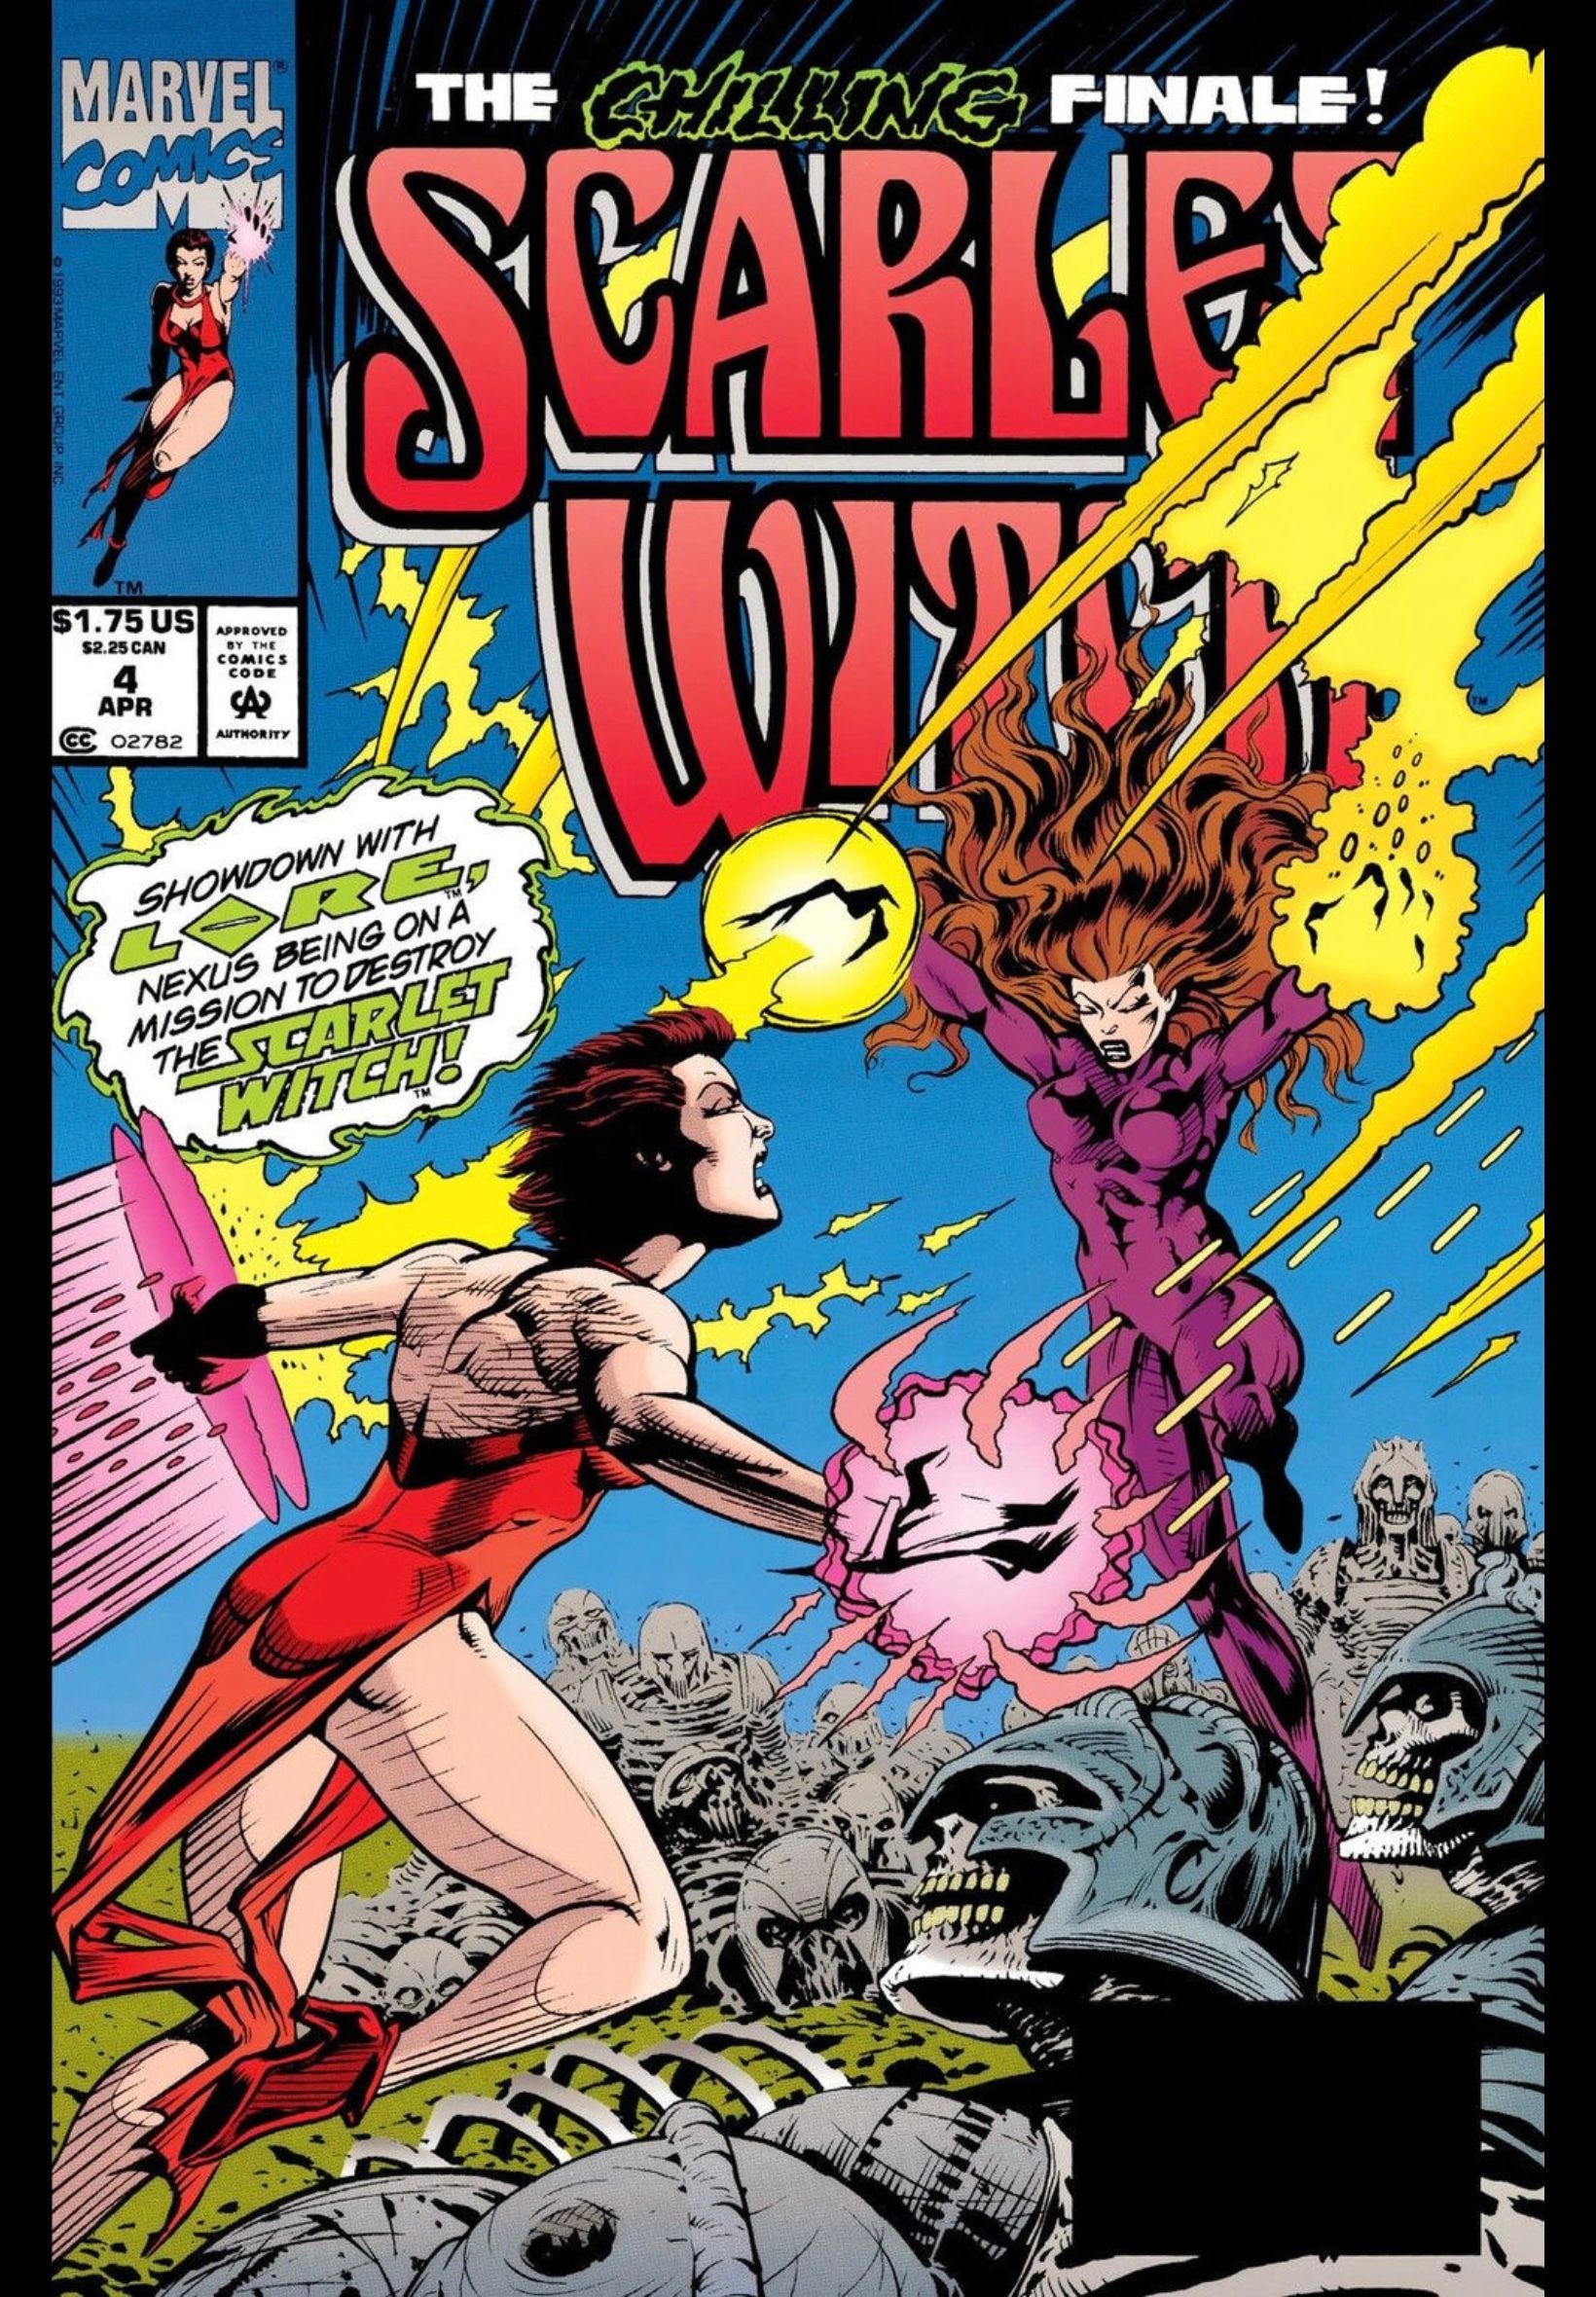 Capa da Scarlet Witch #4 de 1994, com o vilão Lore enfrentando Wanda.